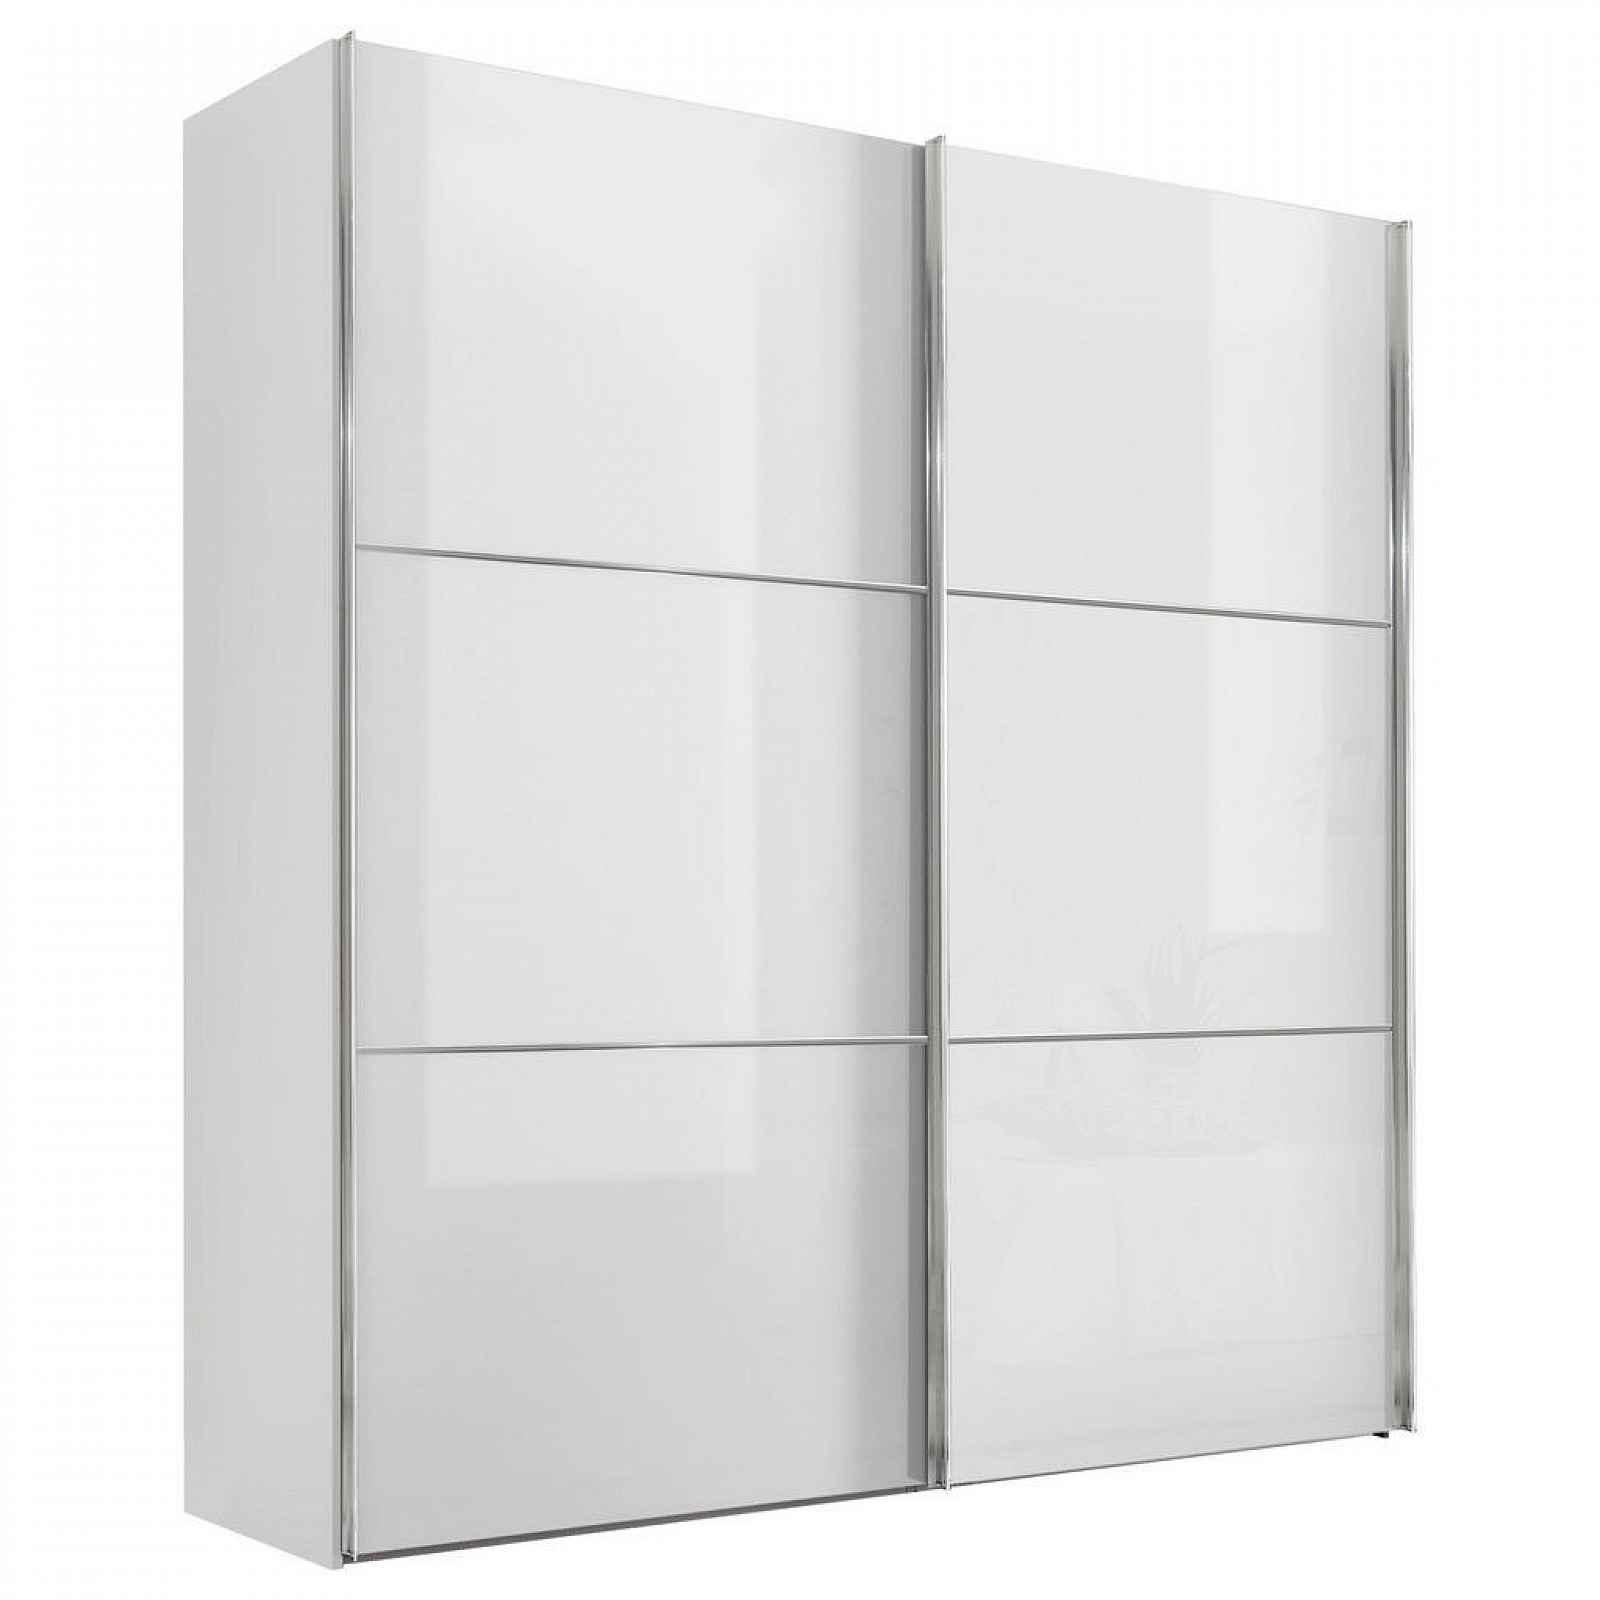 Moderano SCHWEBETÜRENSCHRANK Glasfront, bílá, 200/222/68 cm - Šatní skříně - 000531006074